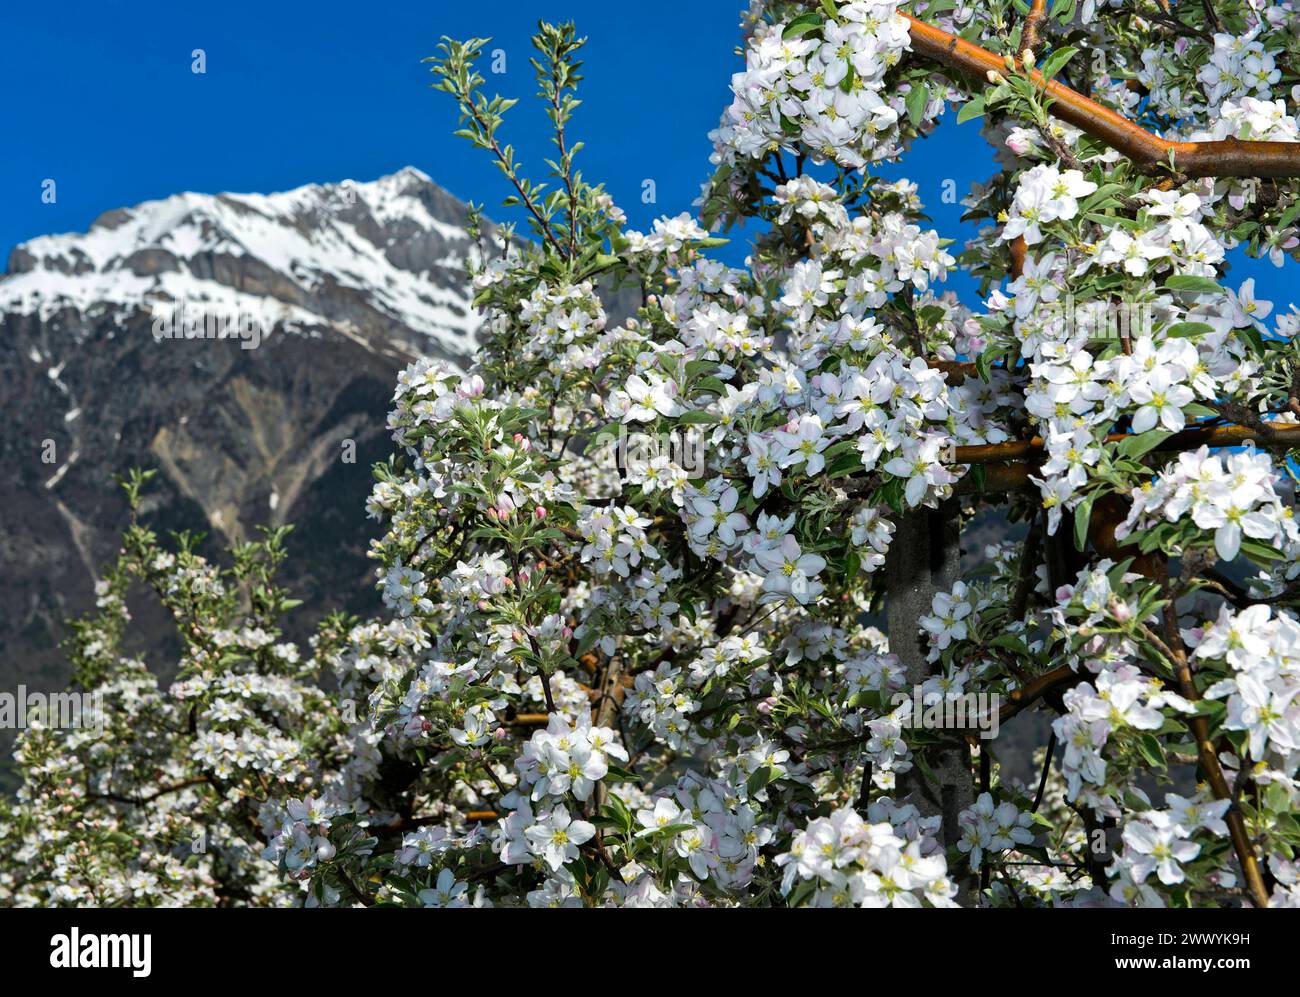 Blühende Obstbäume im Frühling unter dem schneebedeckten Gipfel Grand Chavalard im Rhonetal, Obstanbaugebiet Saxon, Wallis, Schweiz *** blühende Früchte Stockfoto